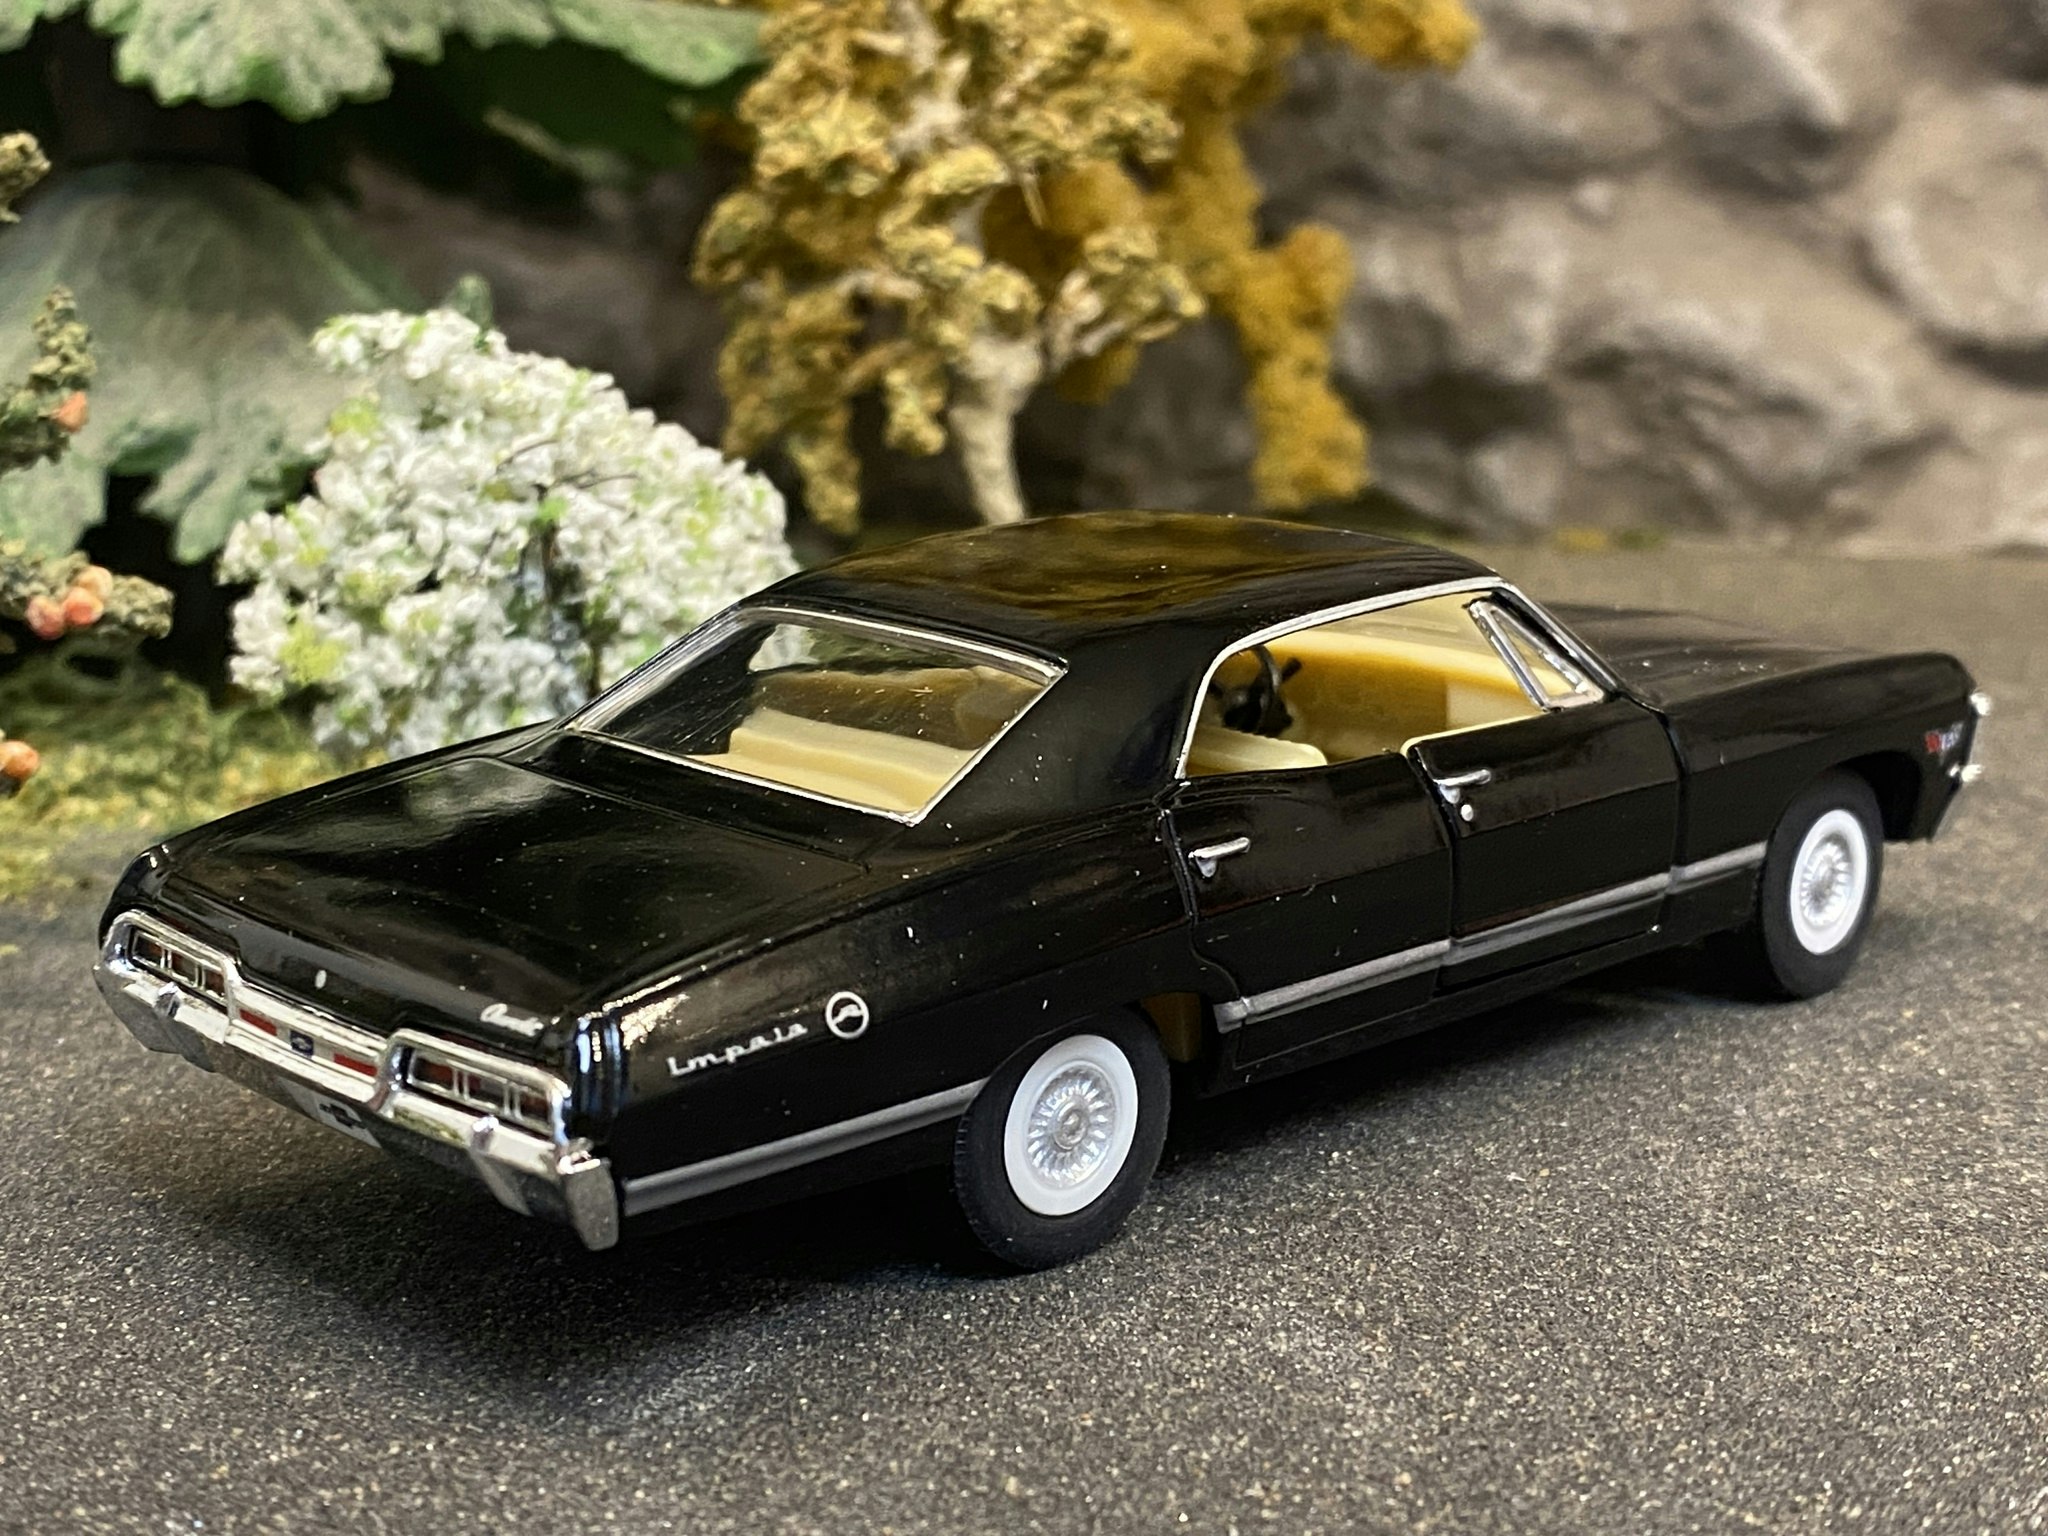 Skala 1/43 Chevrolet Impala 1967, Black fr Kinsmart